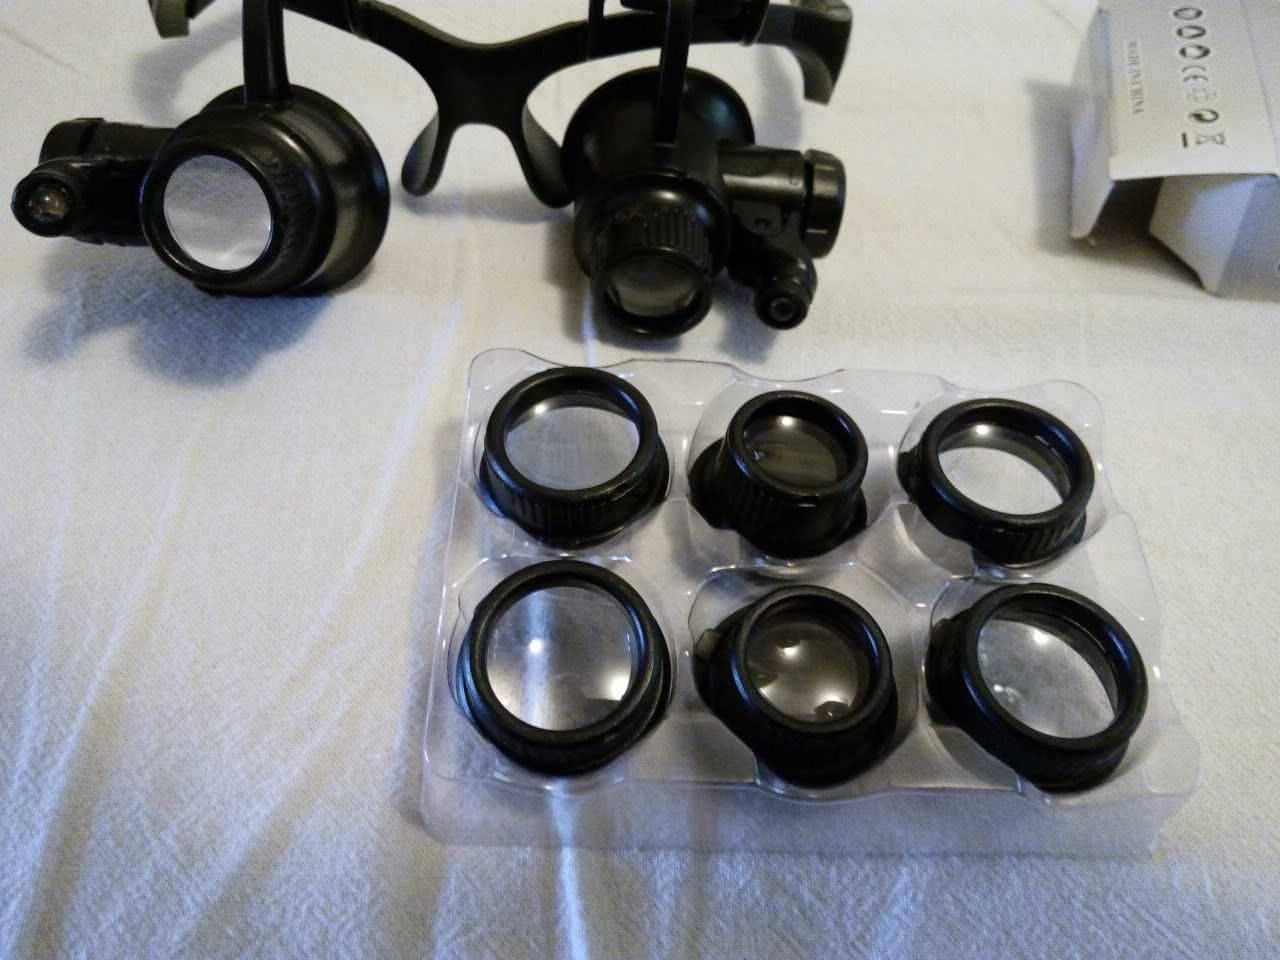 очки+четыре вида увеличительных стекол Х10,Х15,Х20,Х25